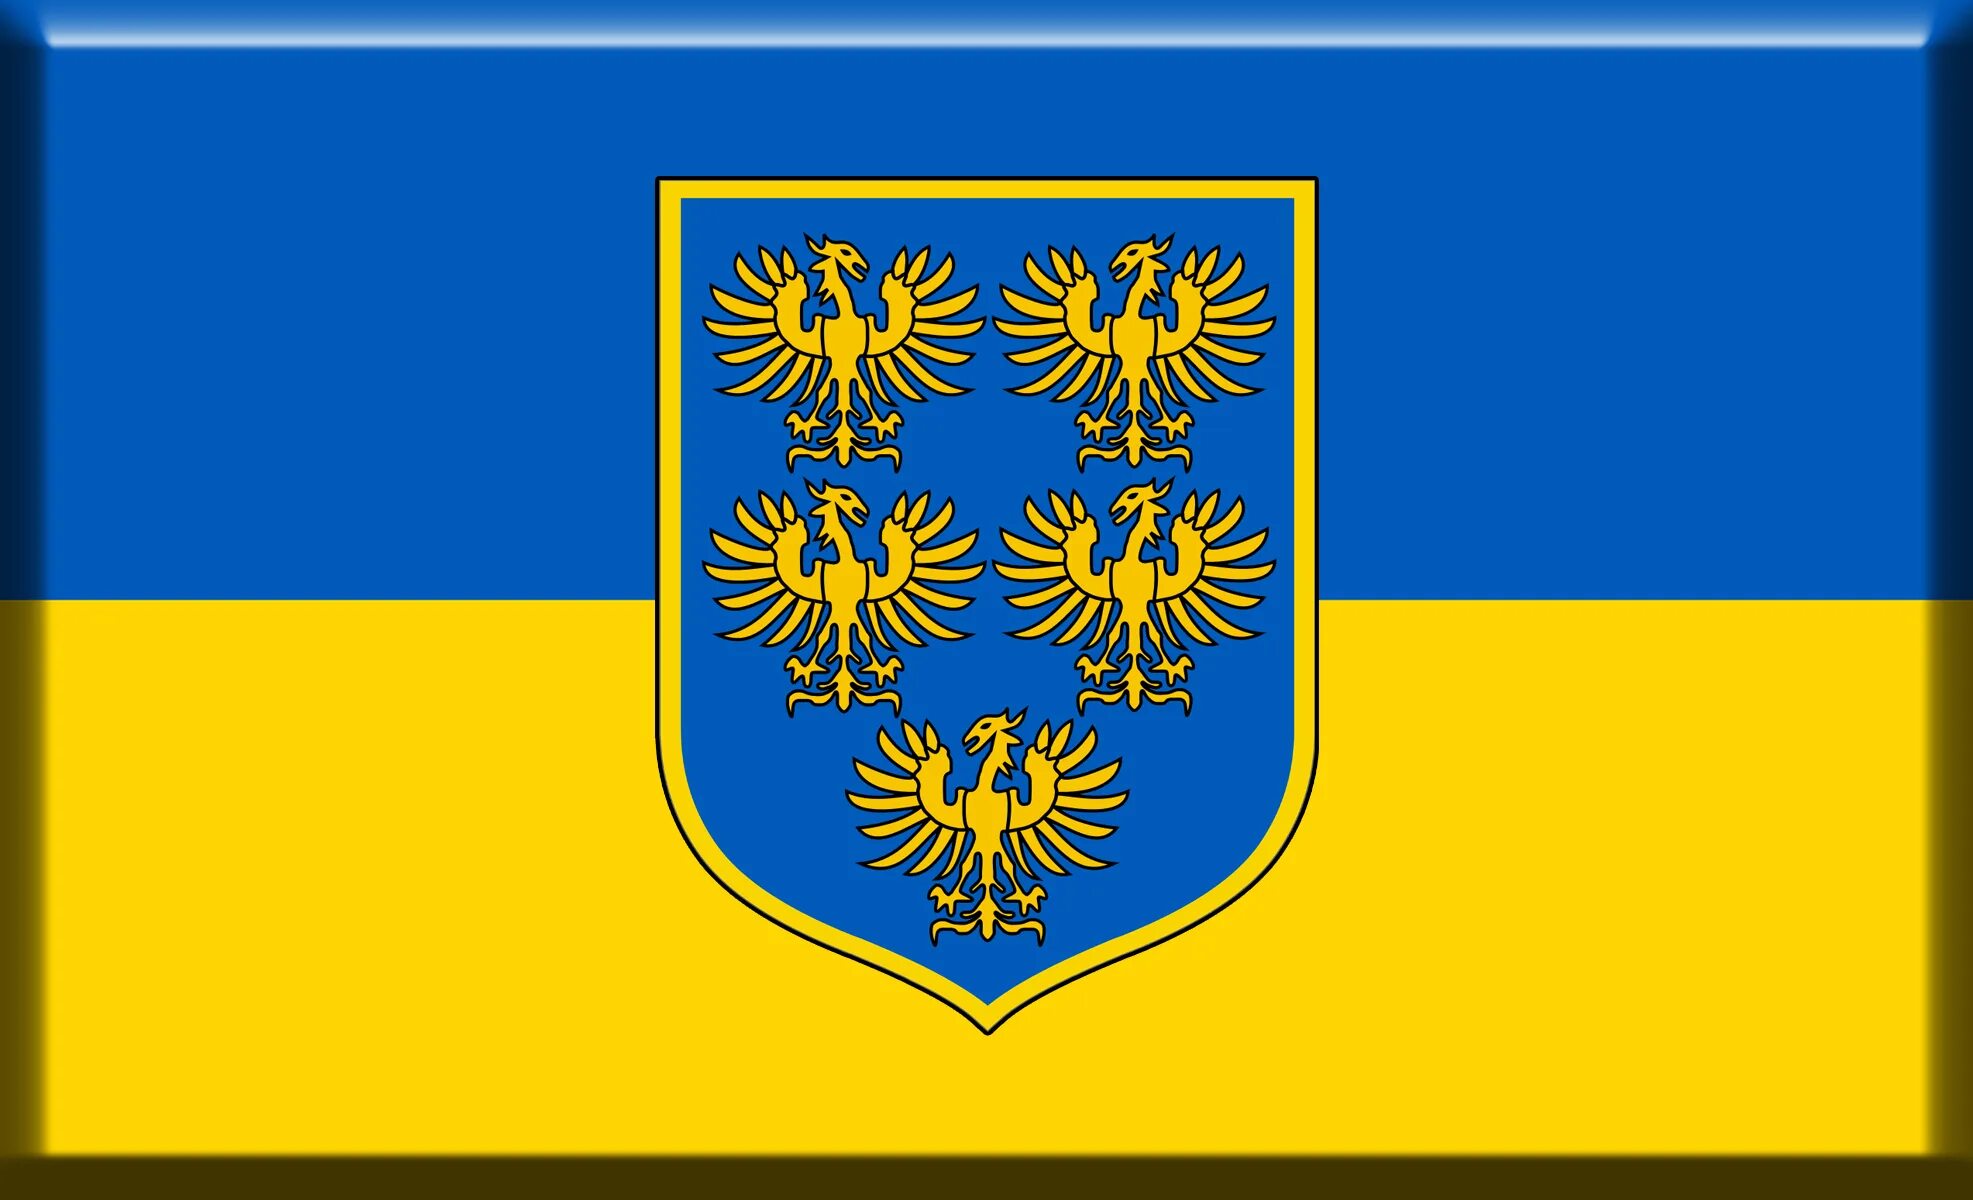 Сине желтый флаг украины. Флаг герцогства нижняя Австрия. Флаг эрцгерцогство нижняя Австрия. Флаг Федеральной земли нижняя Австрия. Флаг австрийской провинции нижняя Австрия.